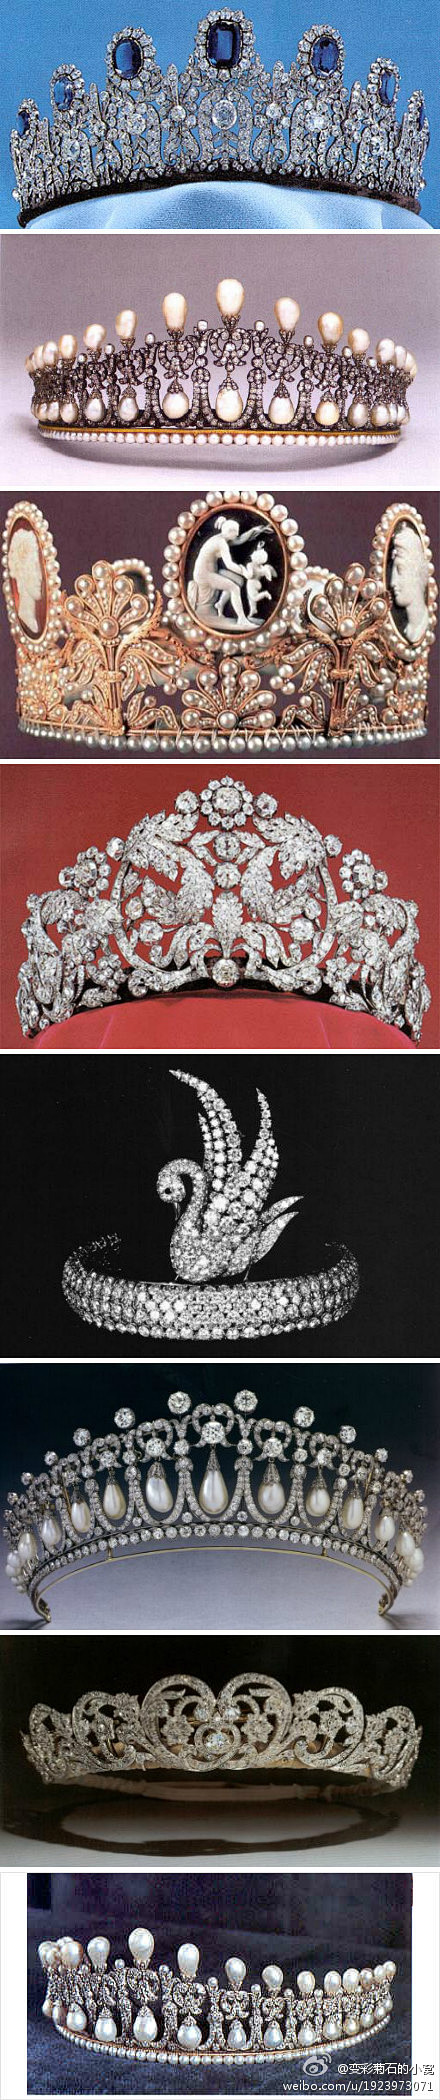 各国王妃皇冠这顶蓝宝石镶钻王冠也属于瑞典王后西尔维娅与之相配的有